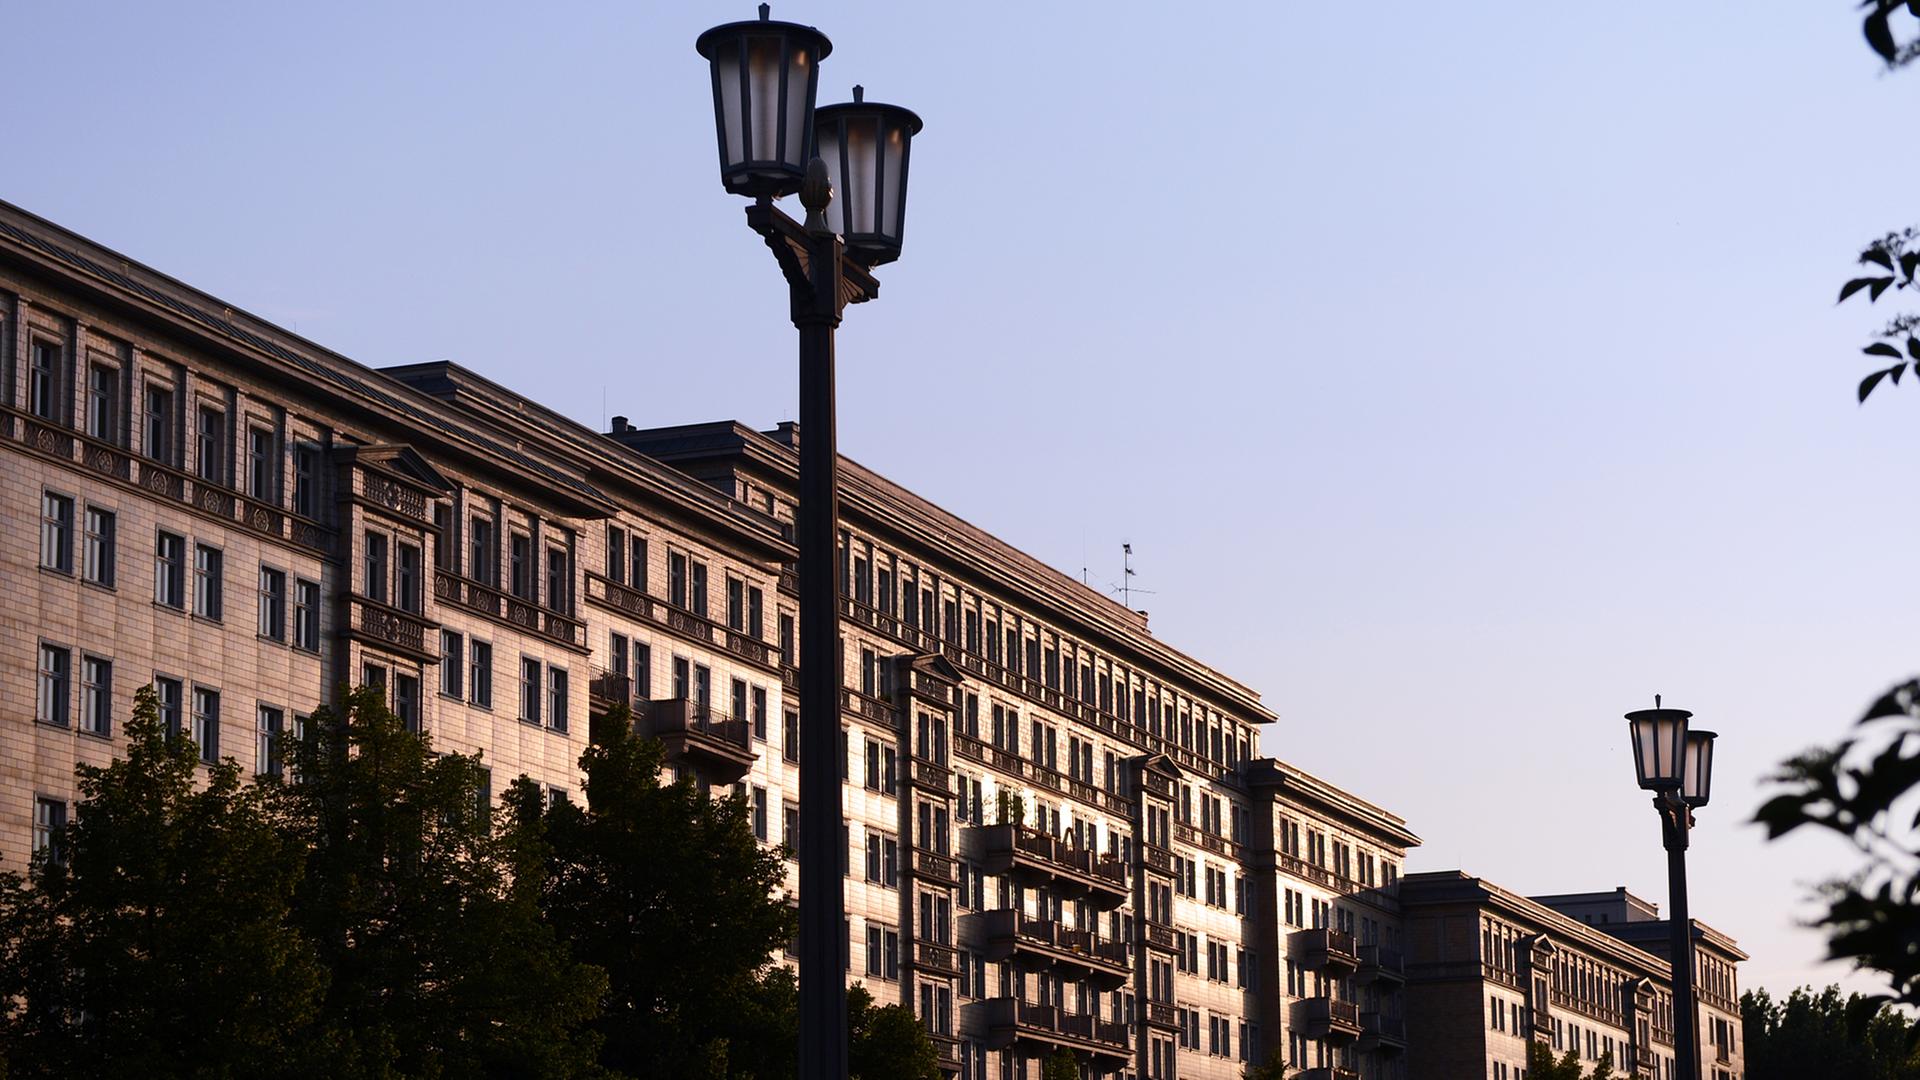 Fassaden von Wohnhäusern in der Karl-Marx-Allee am Abend bei untergehender Sonne, fotografiert am 27.06.2013 in Berlin. Foto: